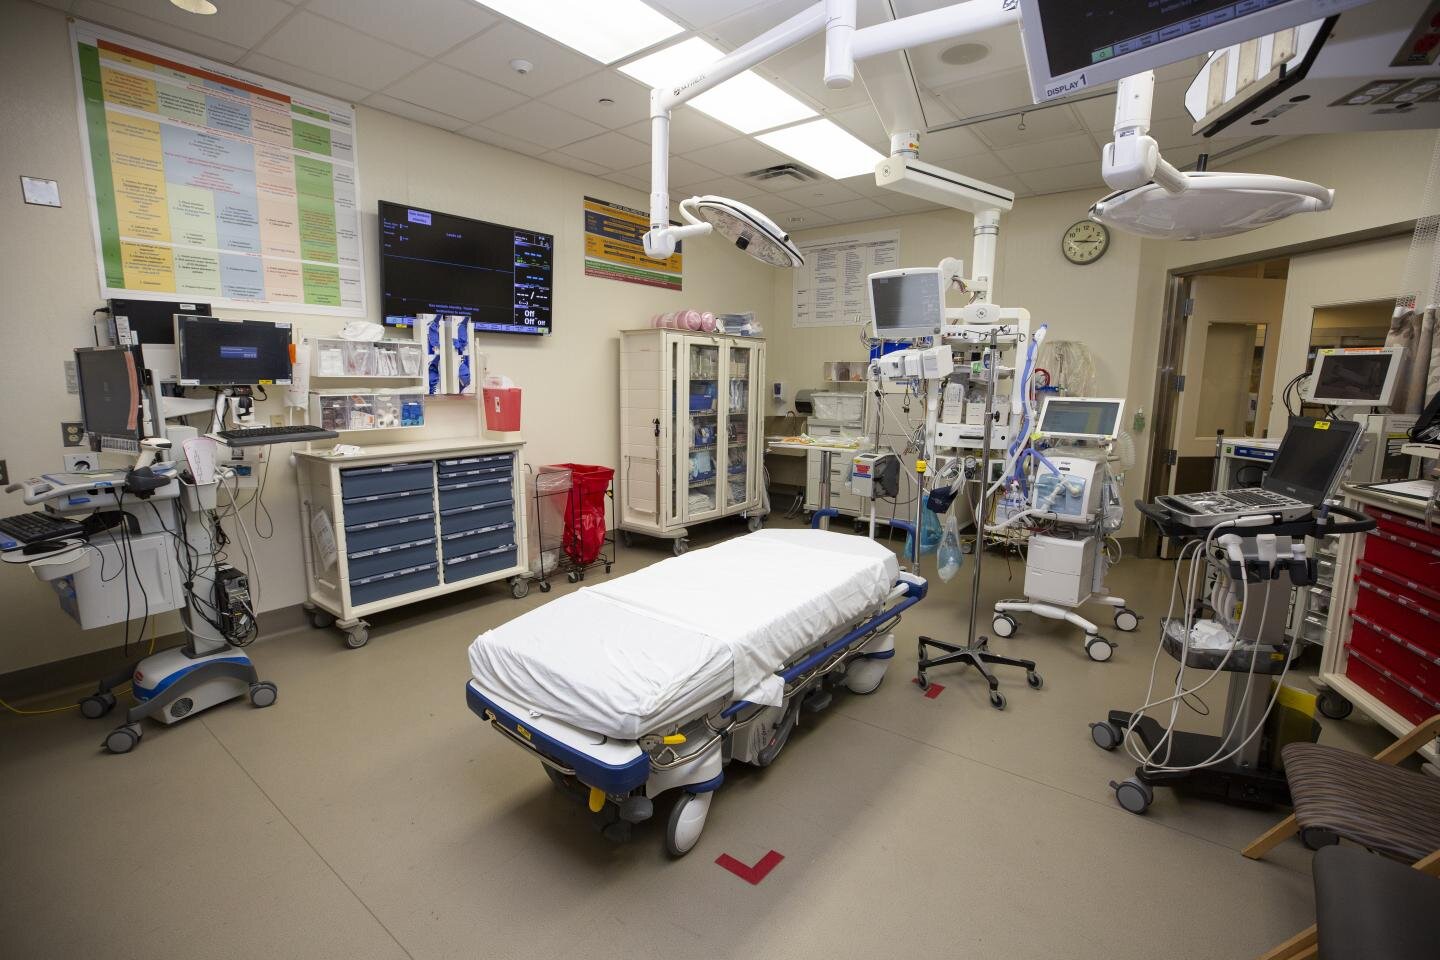 Department-based intensive care unit improves patient survival rates